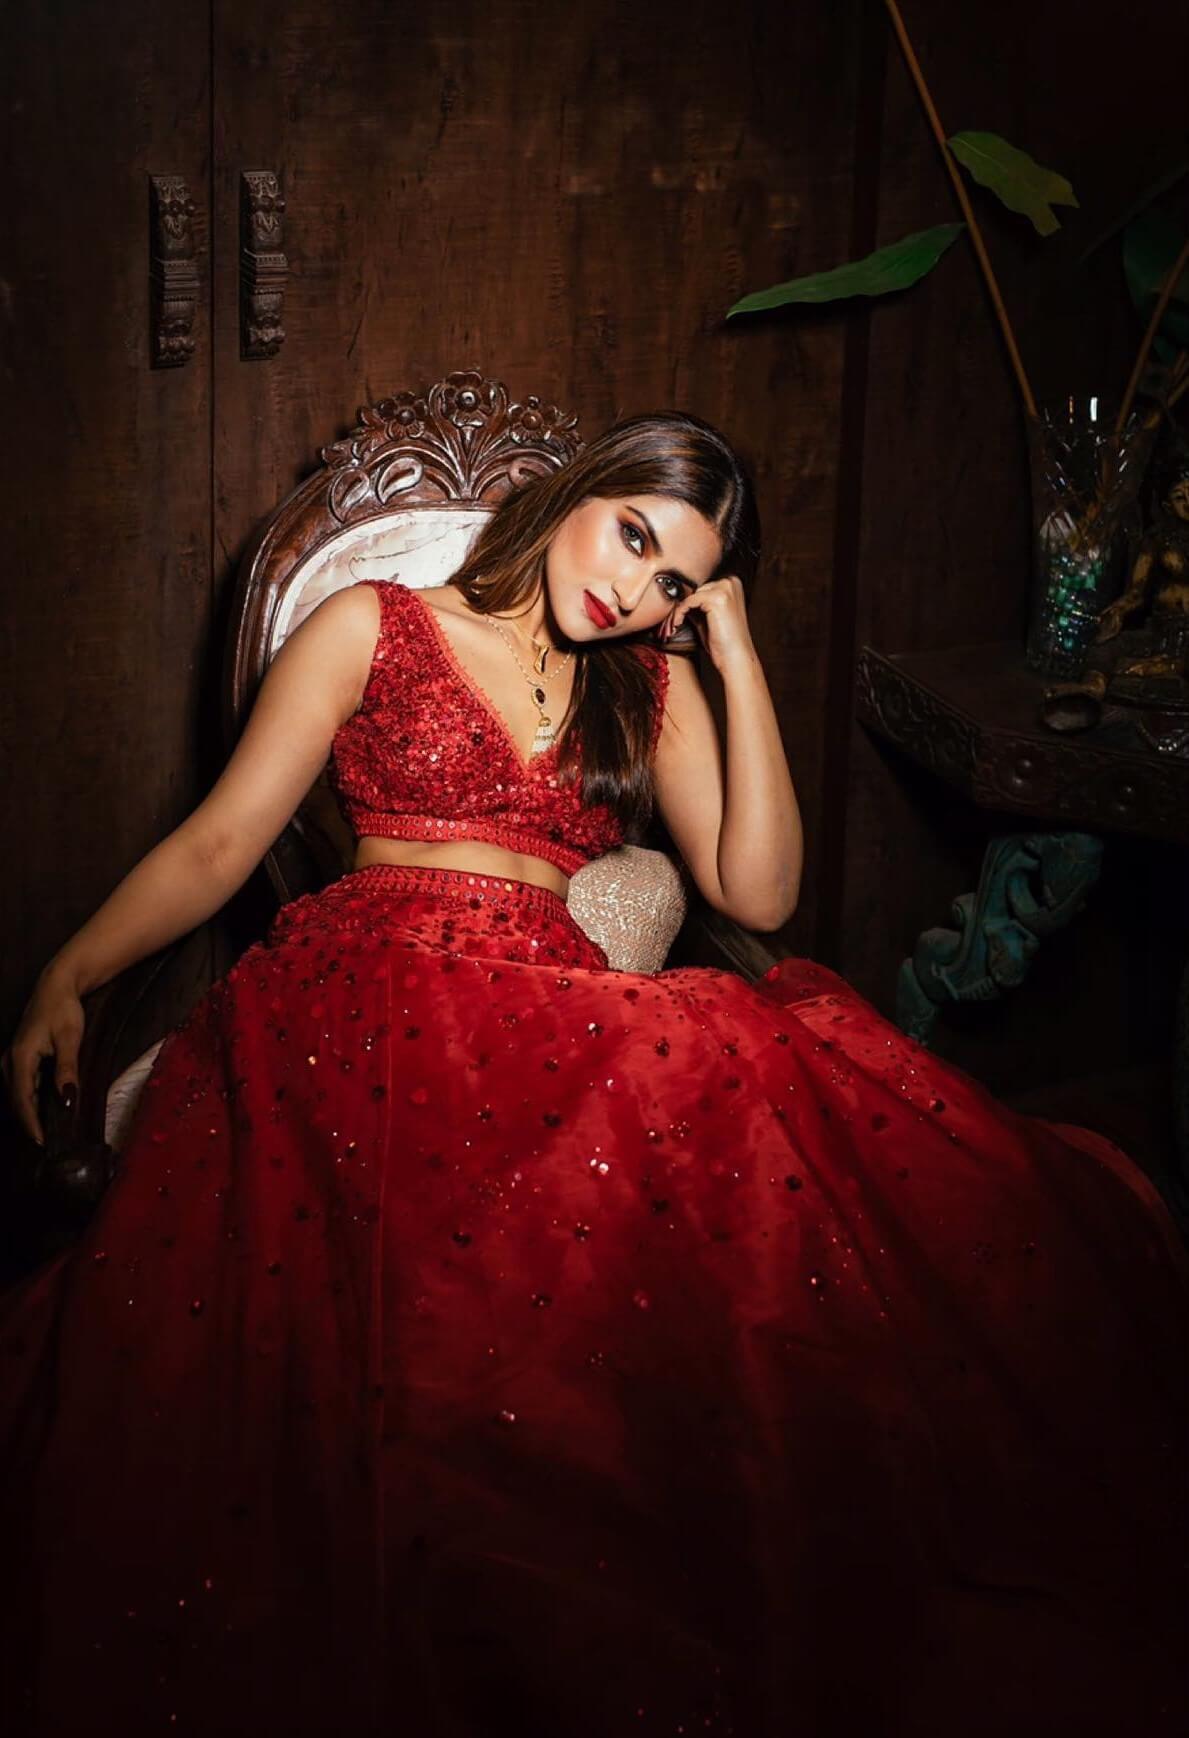 Pranutan Bahl Enchanting Look In Hot Red Dazzling Lehenga Set